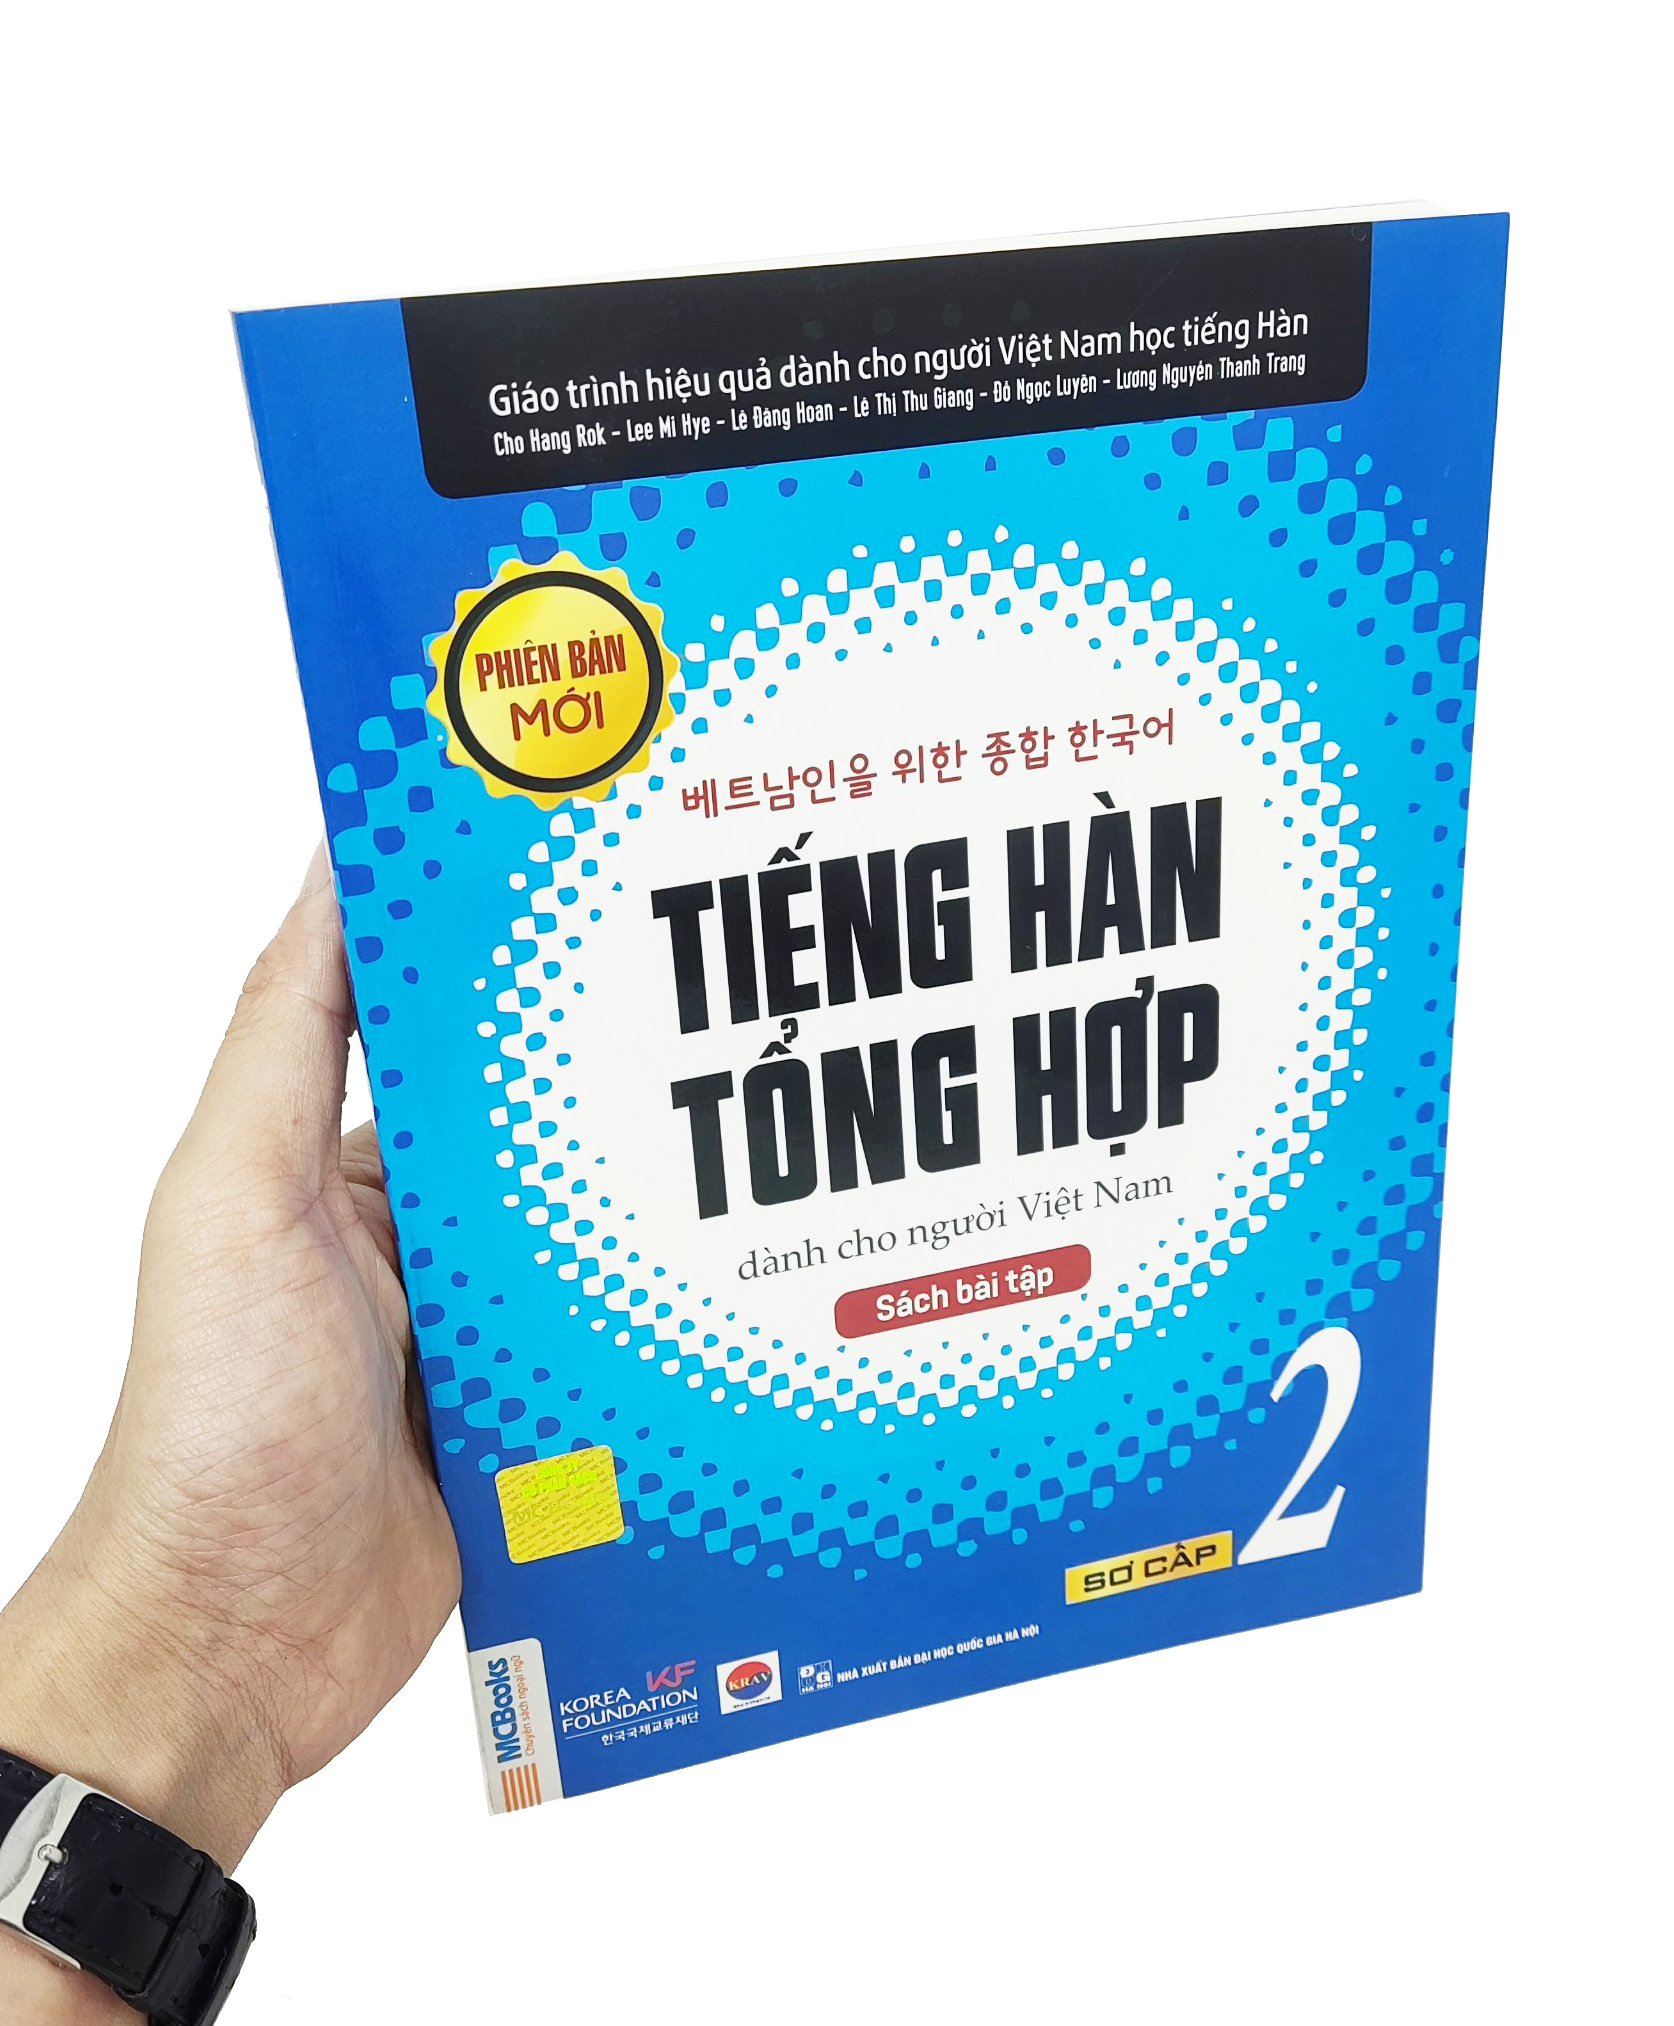 Tiếng Hàn Tổng Hợp Dành Cho Người Việt Nam - Sách Bài Tập - Sơ Cấp 2 PDF